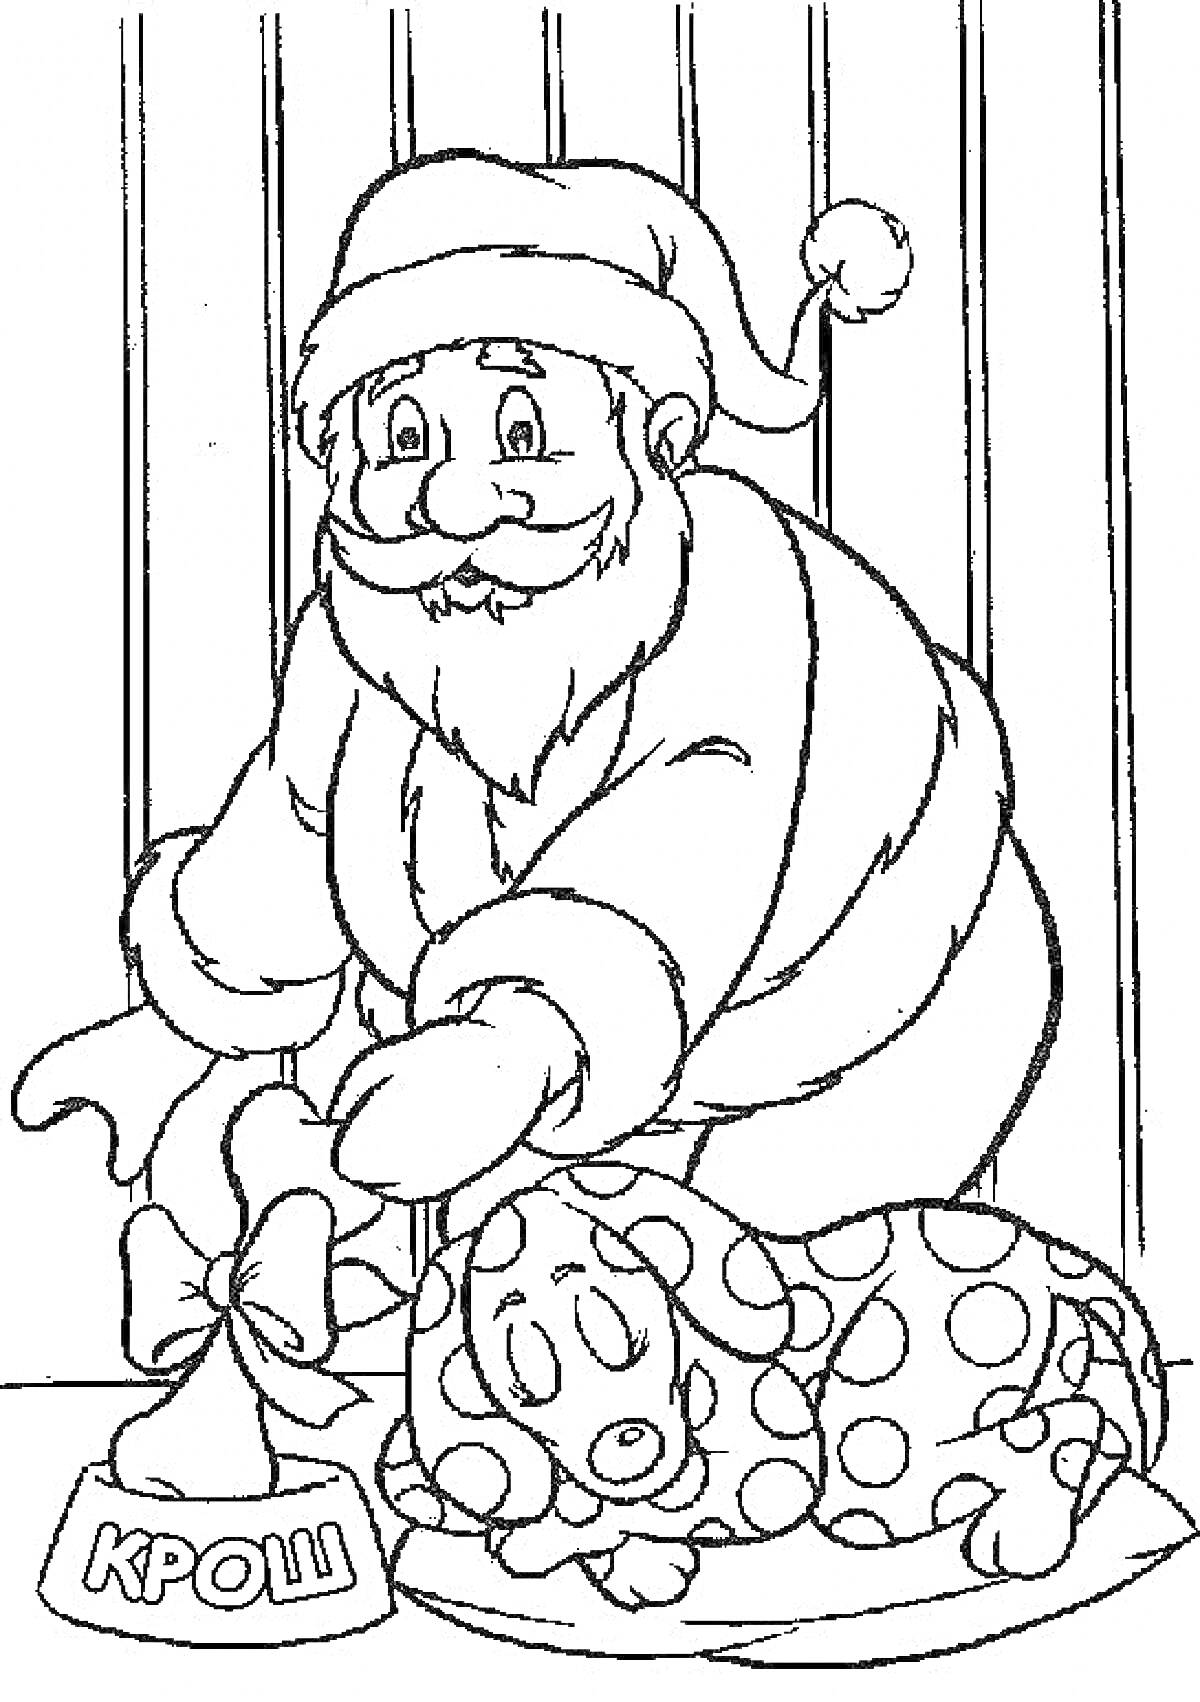 Раскраска Дед Мороз кладёт подарок под ёлку со спящим персонажем Крош в костюме горошек